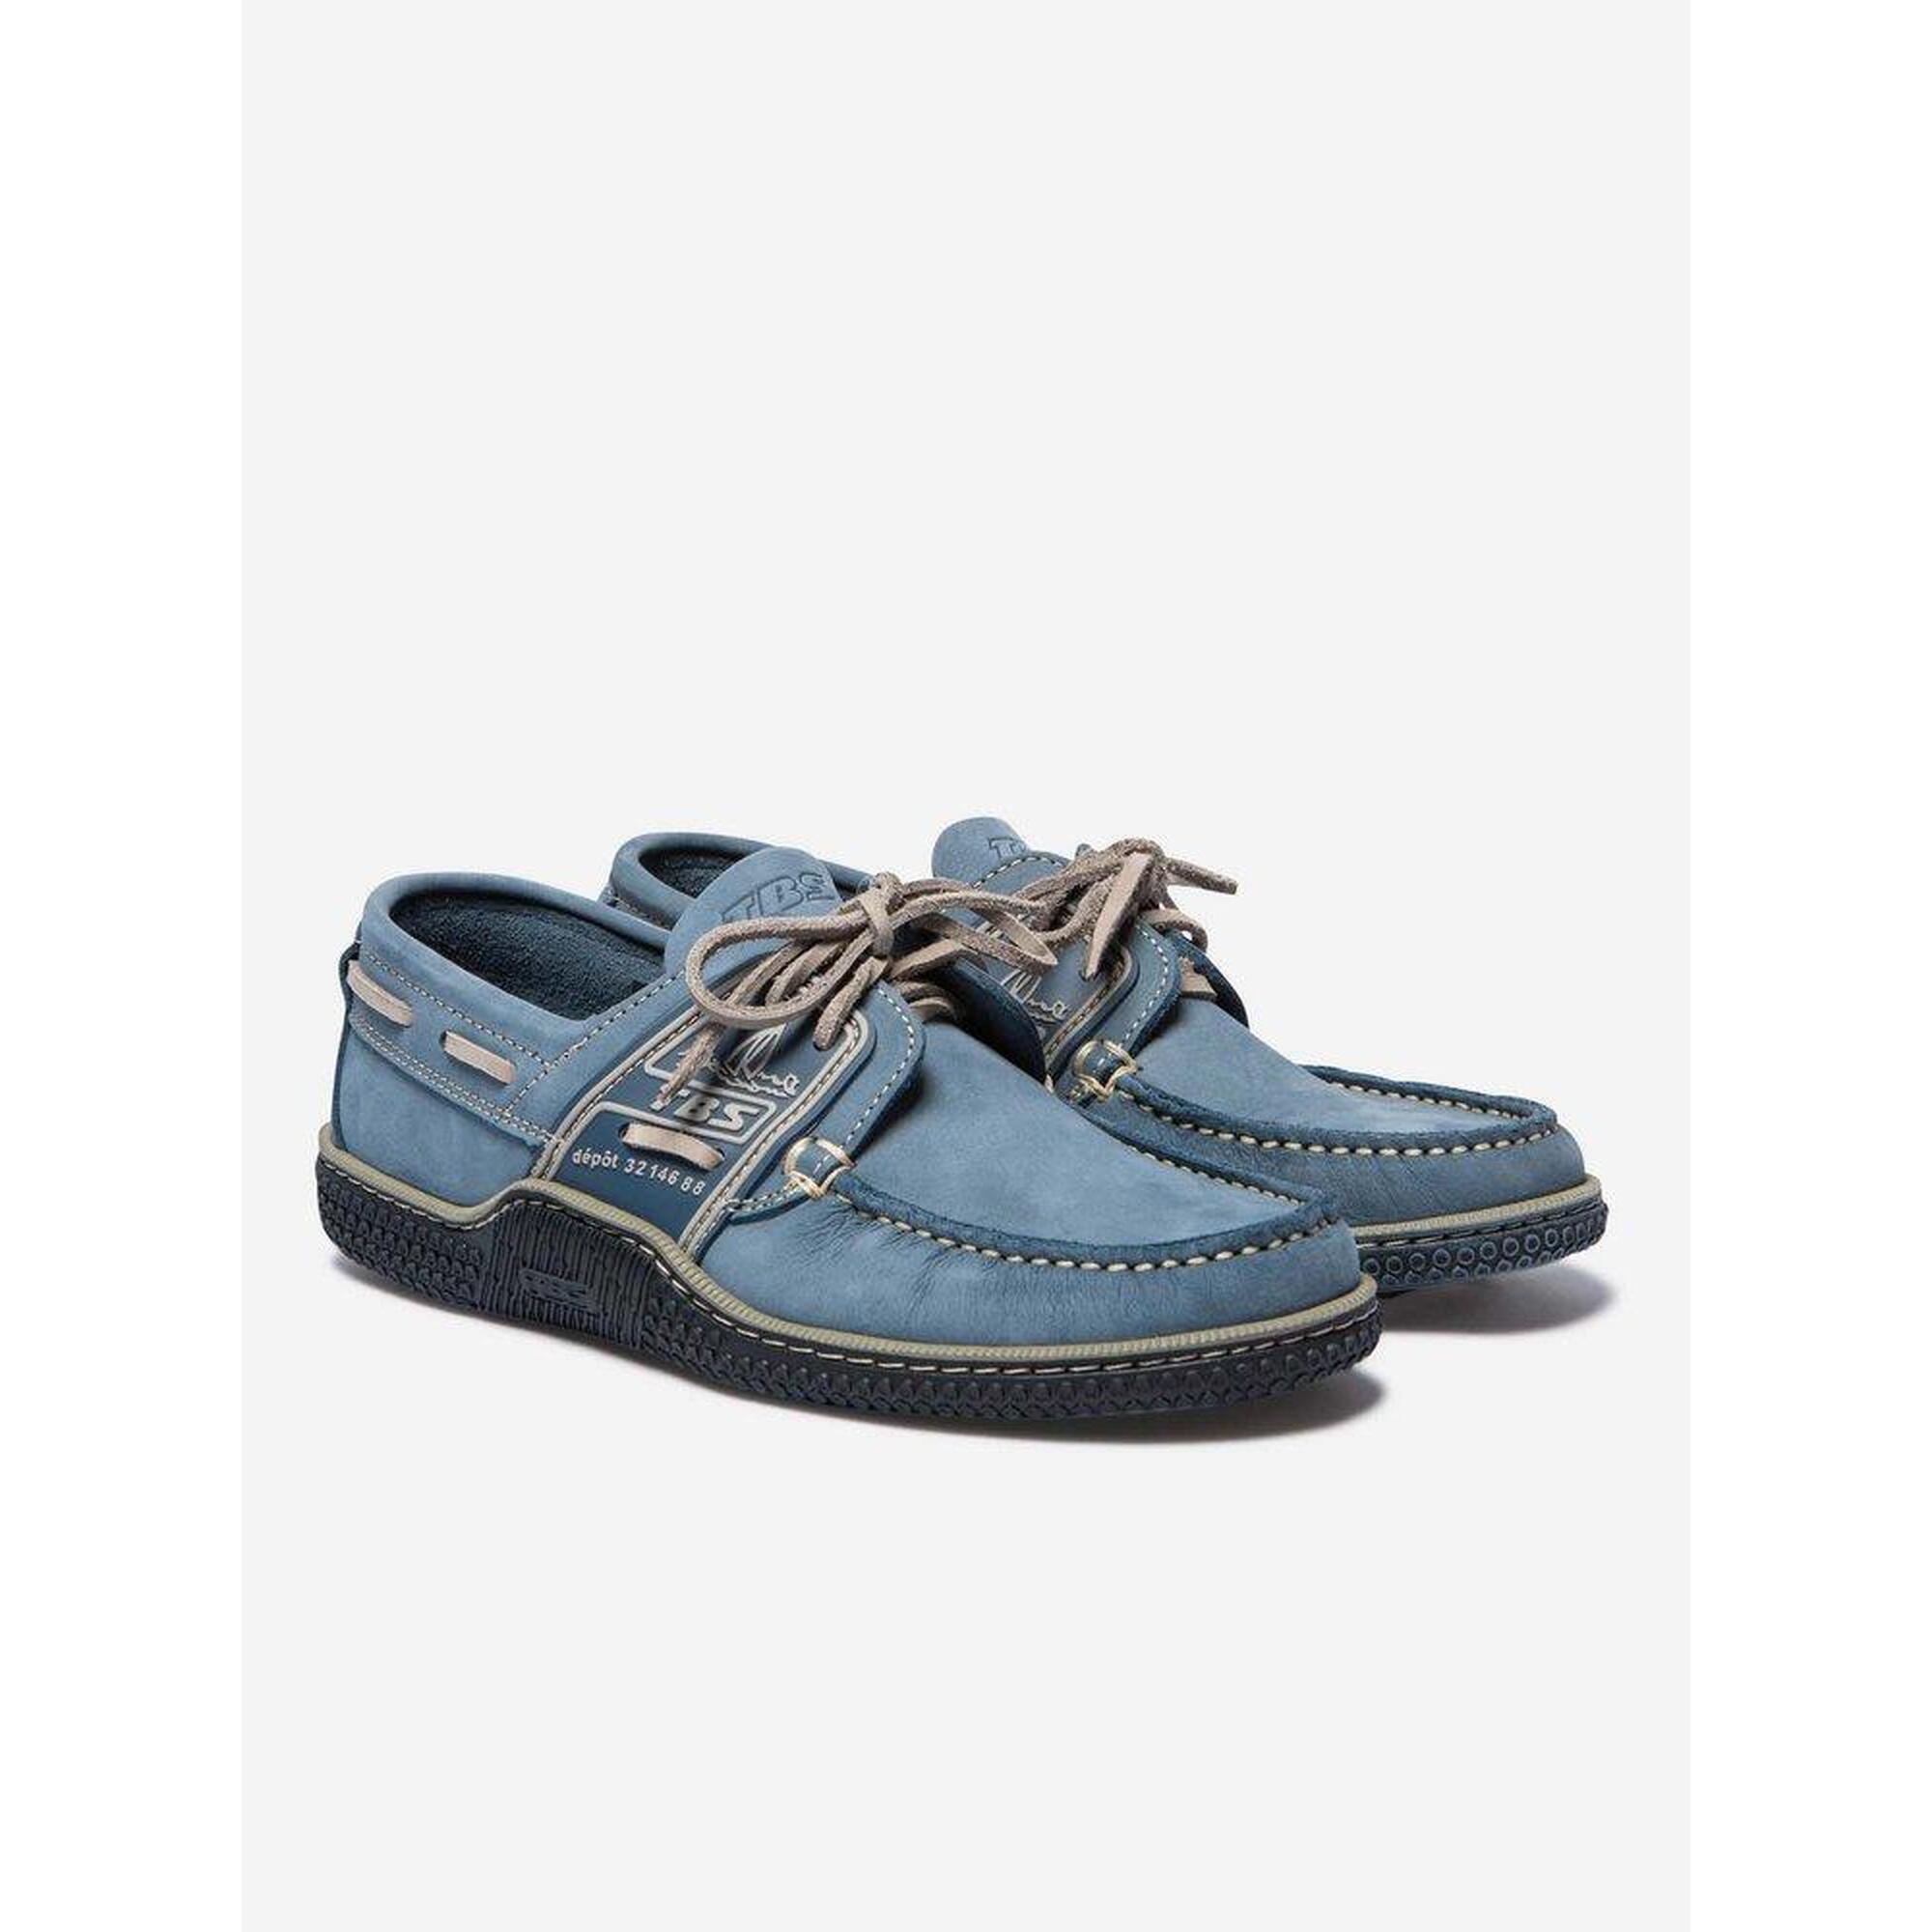 Pantofi pentru navigatie Globek - albastru barbati